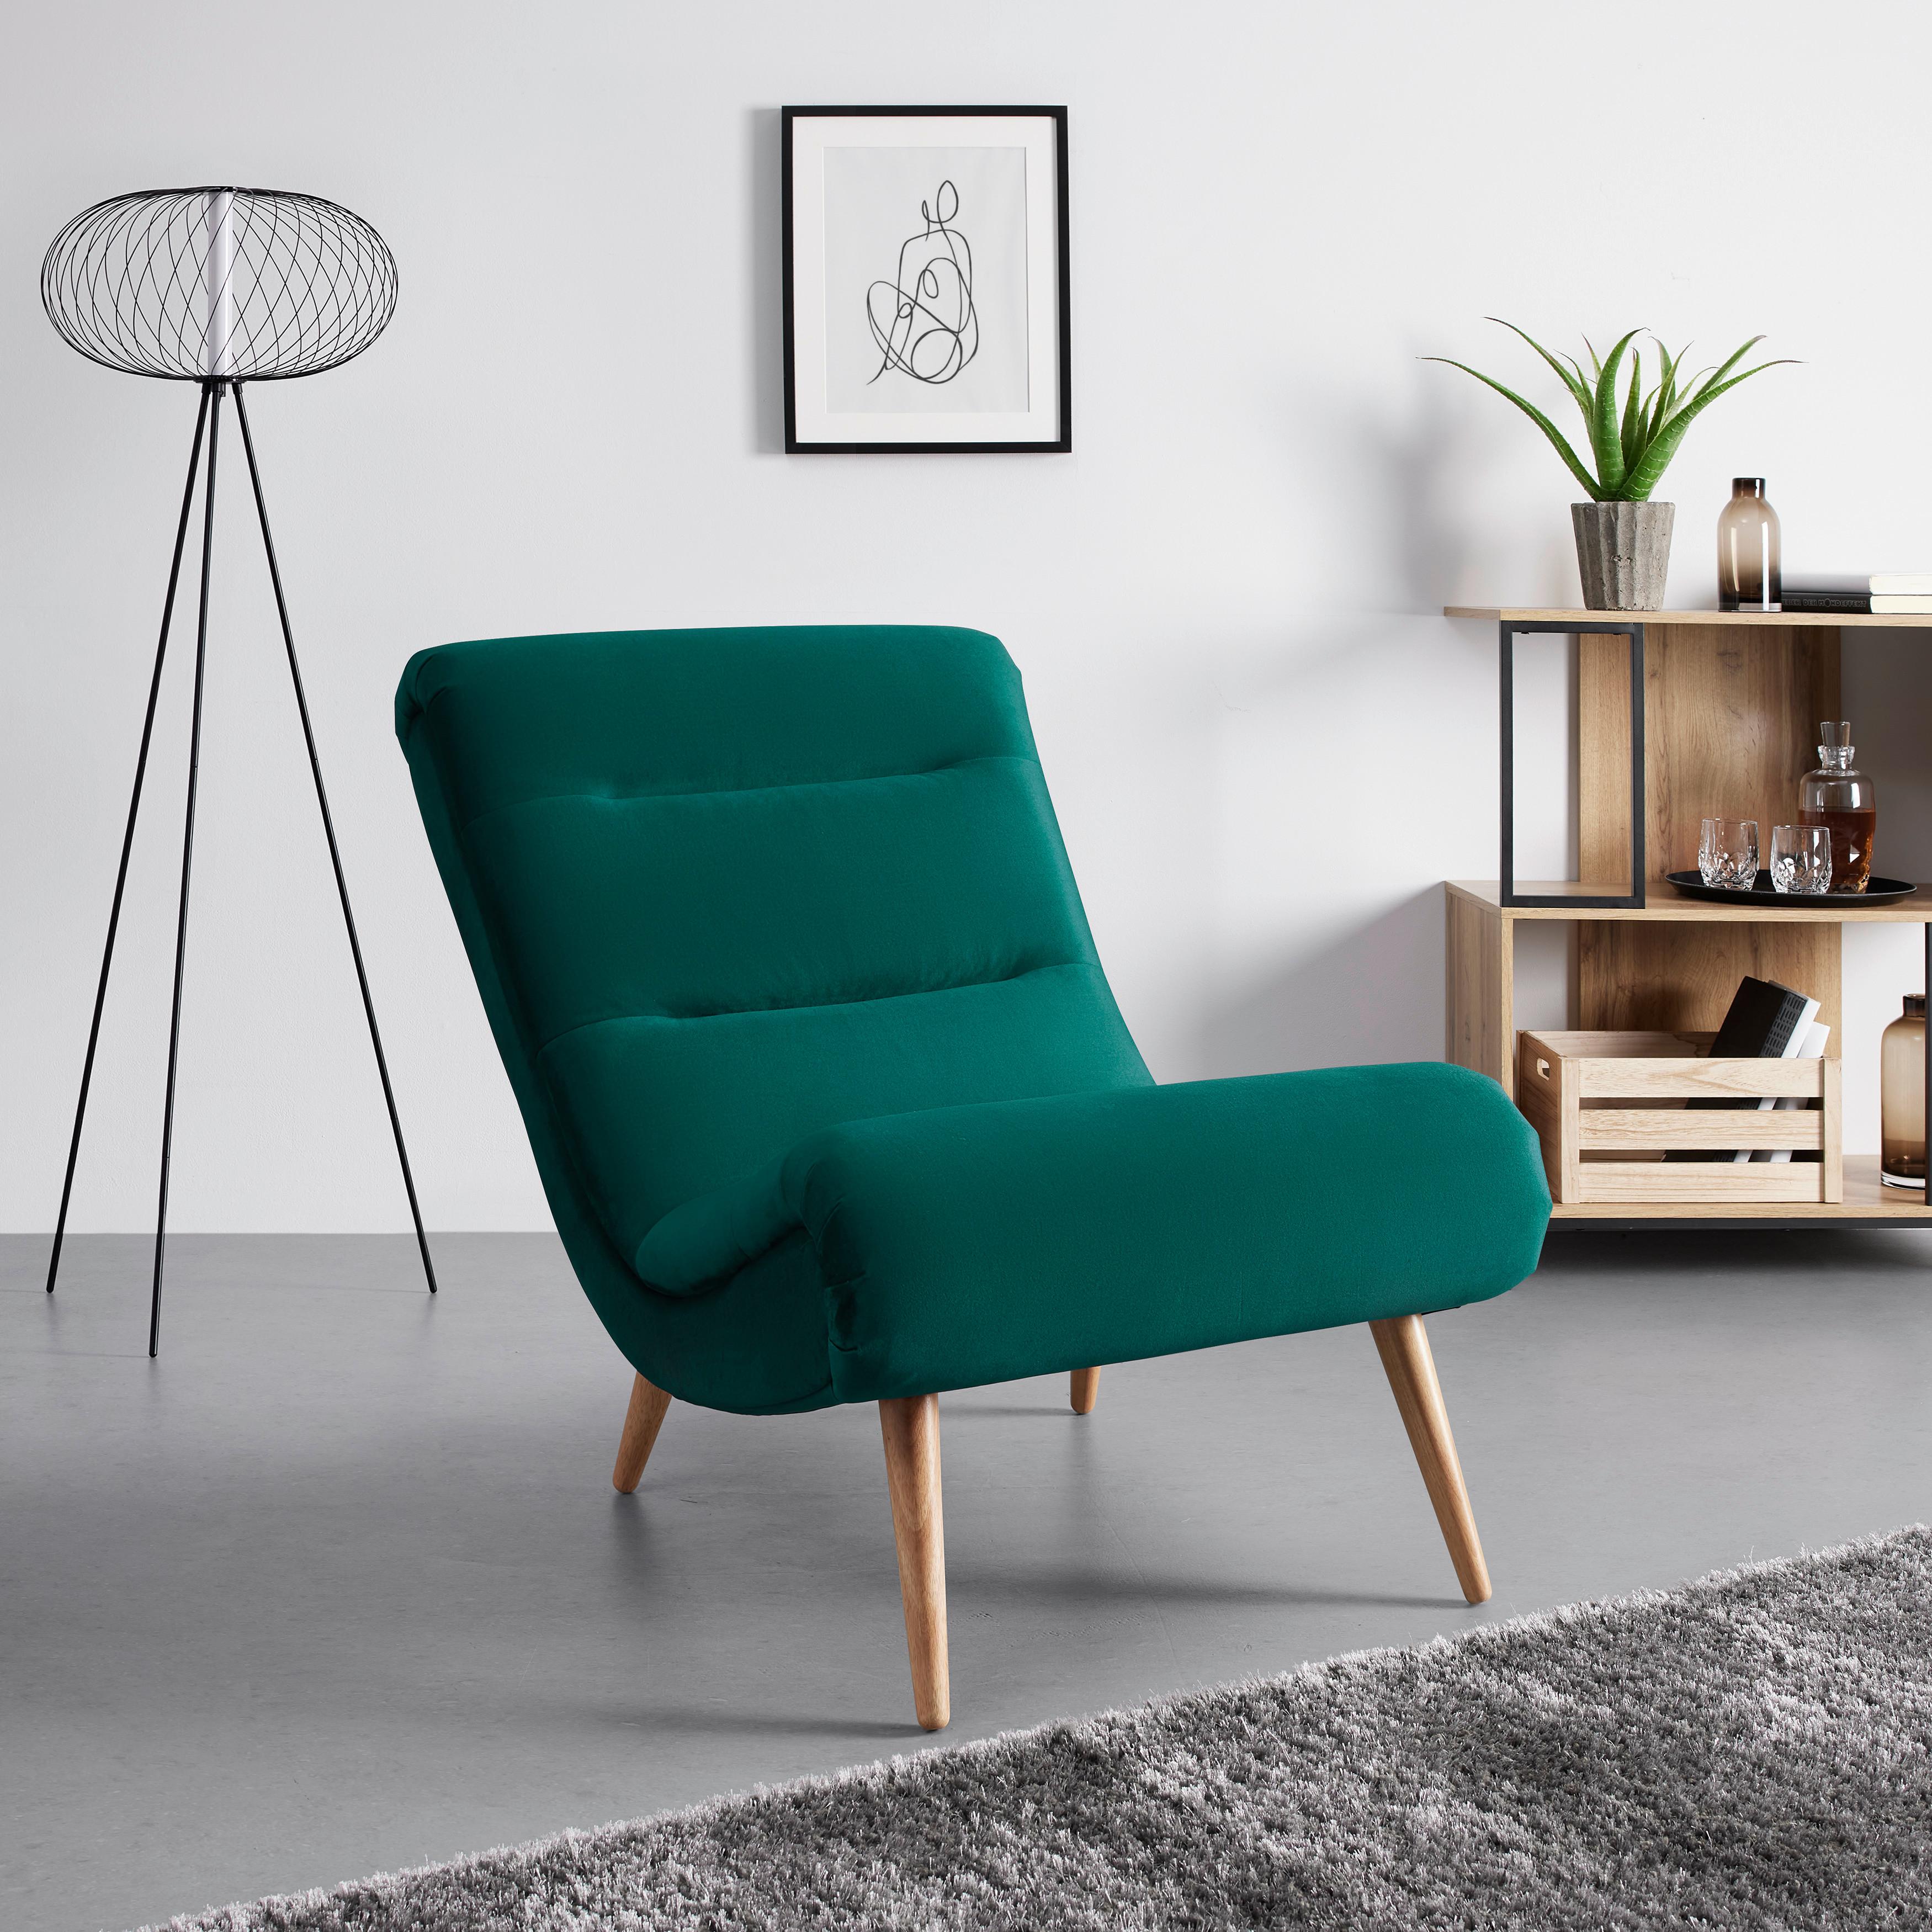 Relaxsessel grün, grün, "Jan" - Naturfarben/Grün, MODERN, Holz/Textil (74/102/90cm) - Bessagi Home